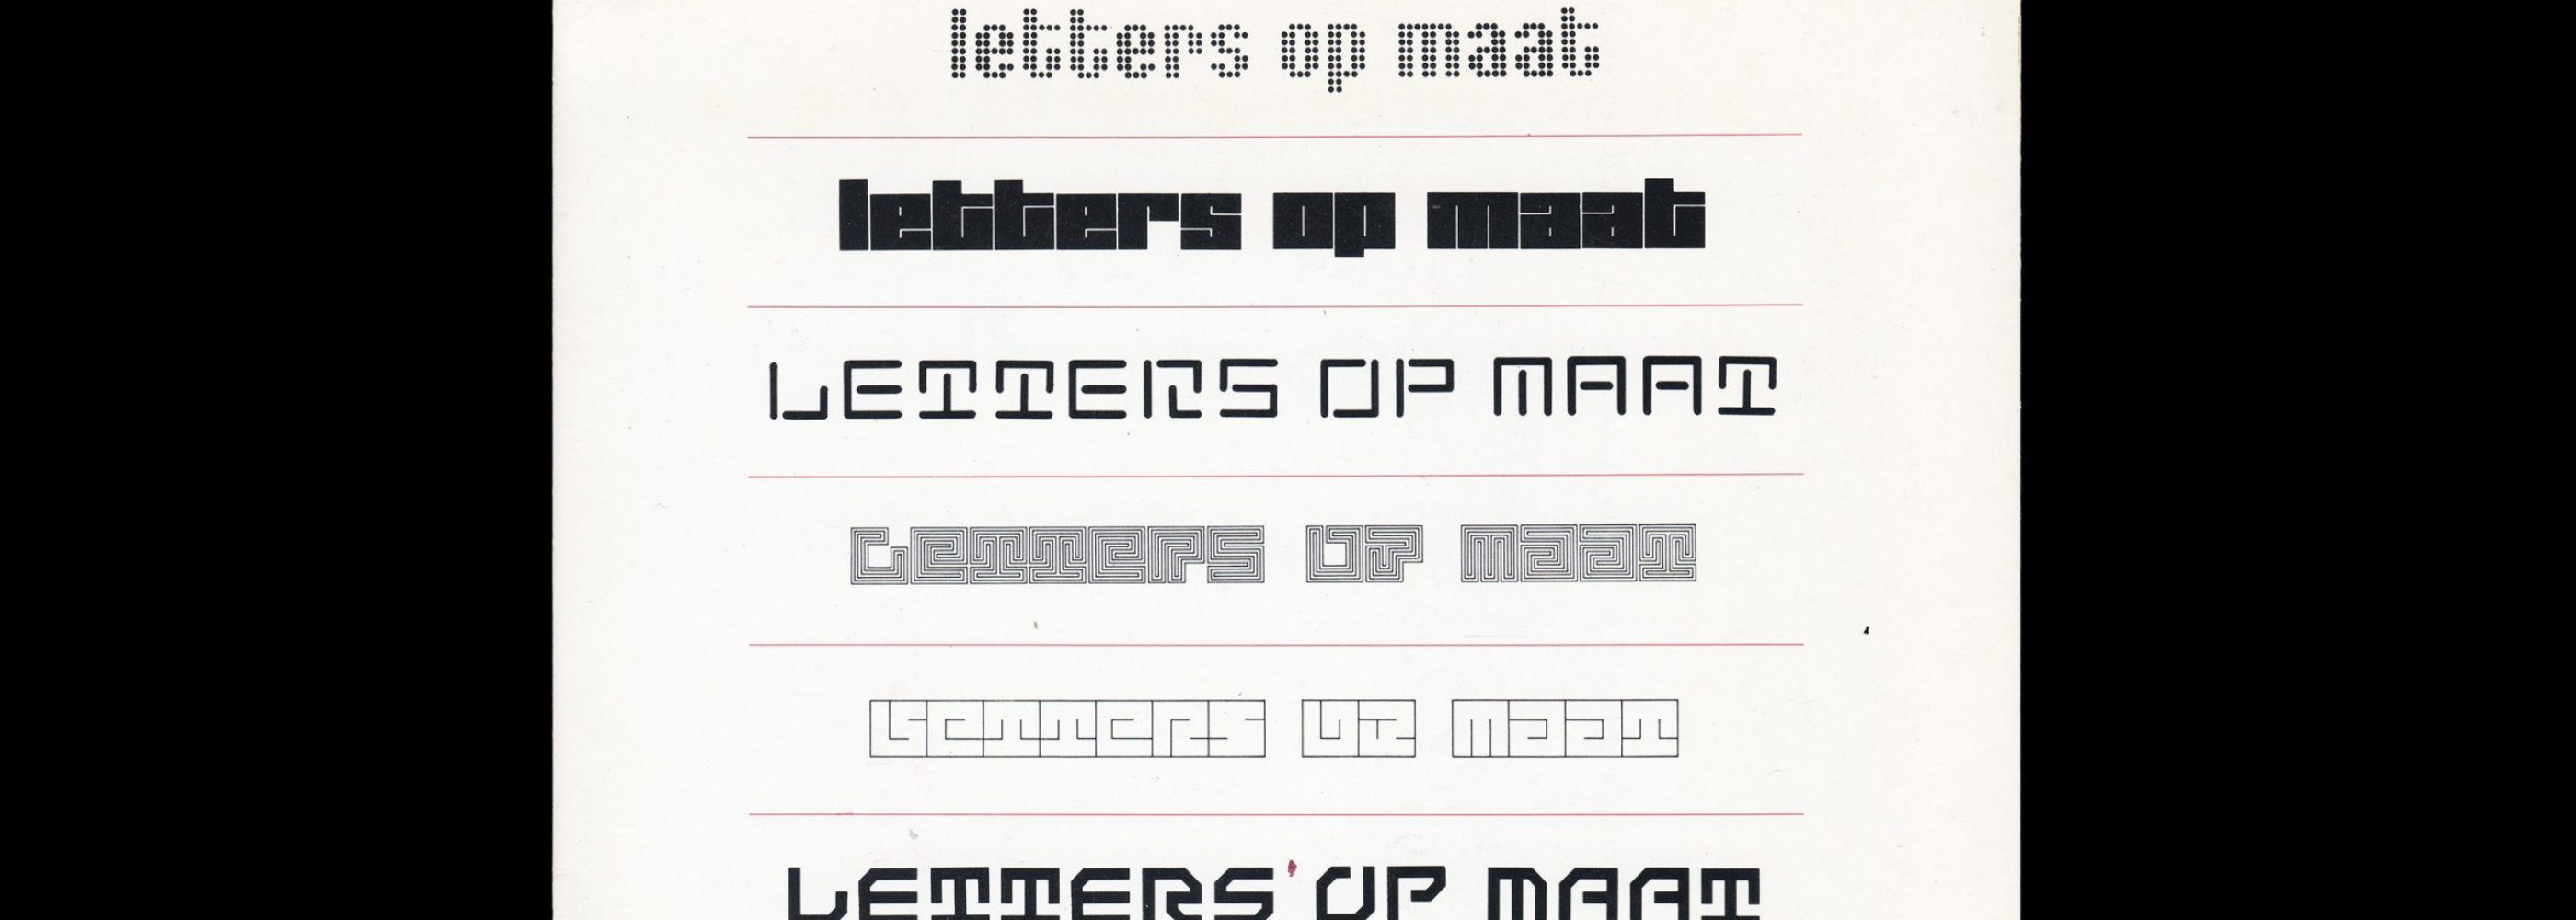 Letters op maat. Lecturis 18, Jurriaan Schrofer, 1987